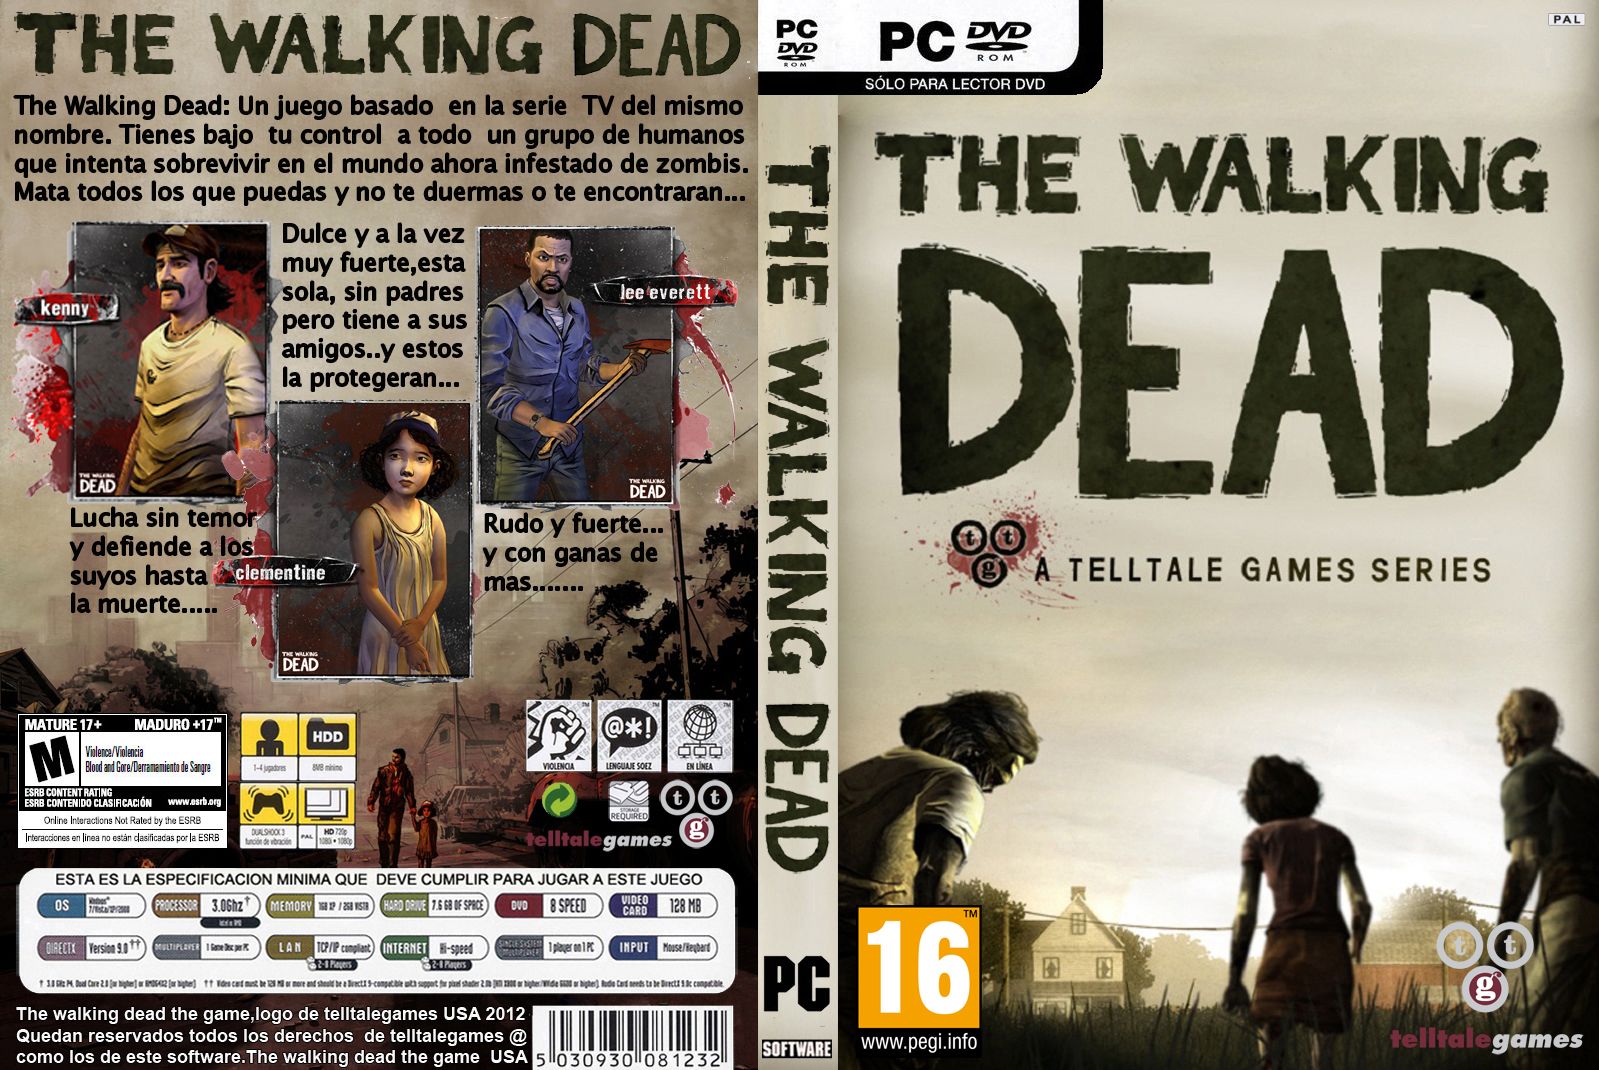 The_Walking_Dead_-_Dvd_-_Custom_por_FERNILLA_%5Bpc%5D_80.jpg